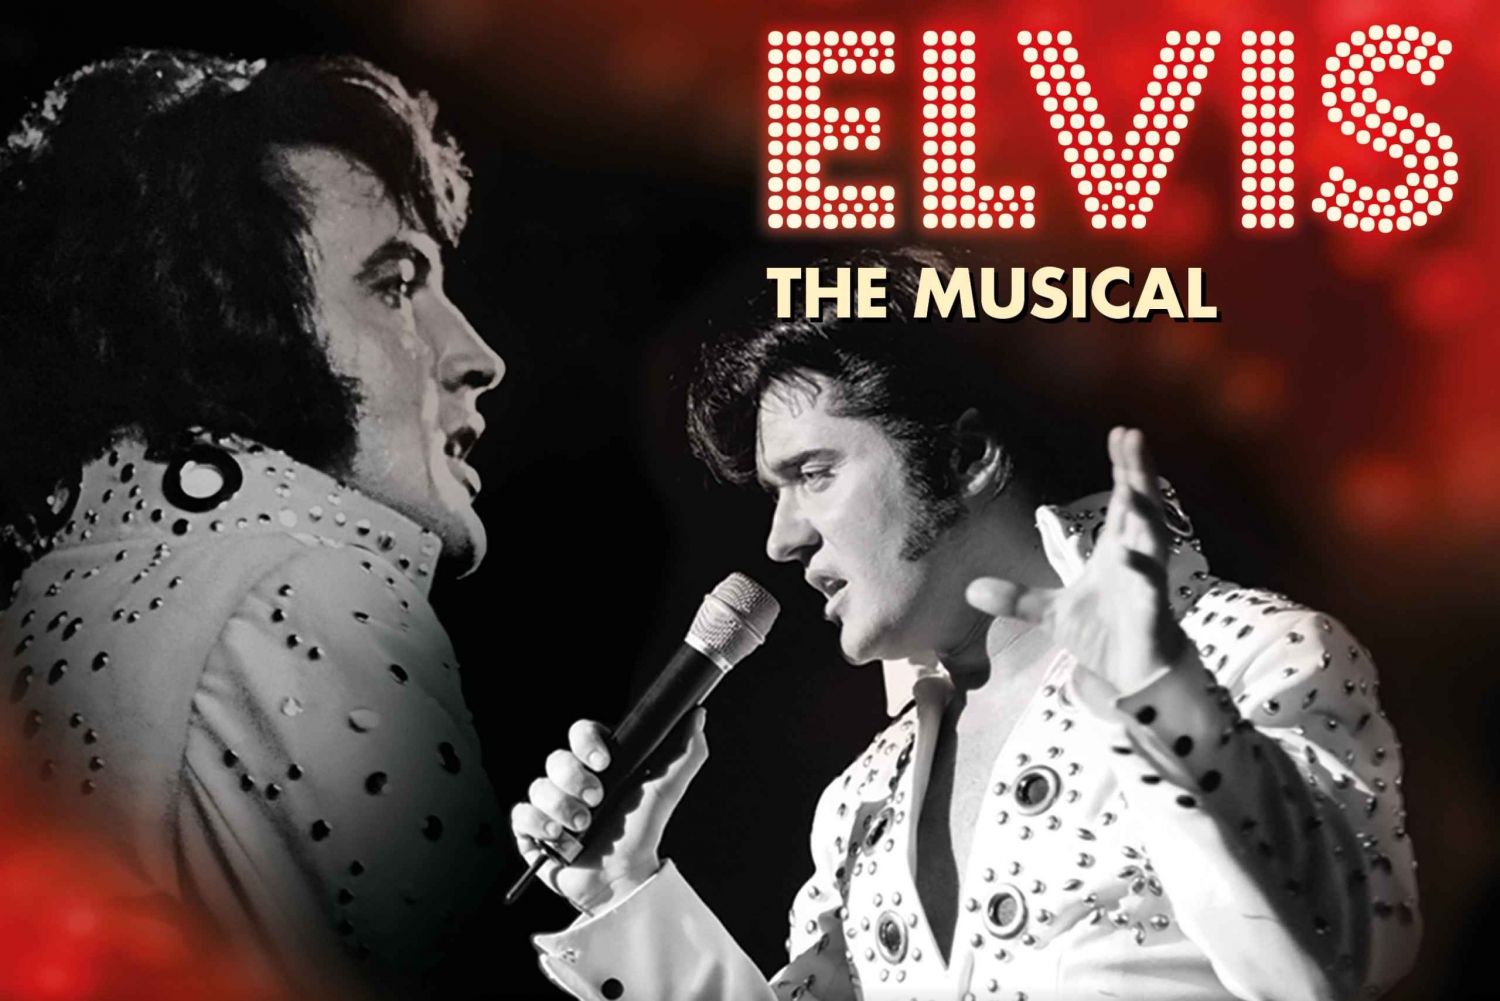 Berlin: Biljett till 'ELVIS - The Musical'